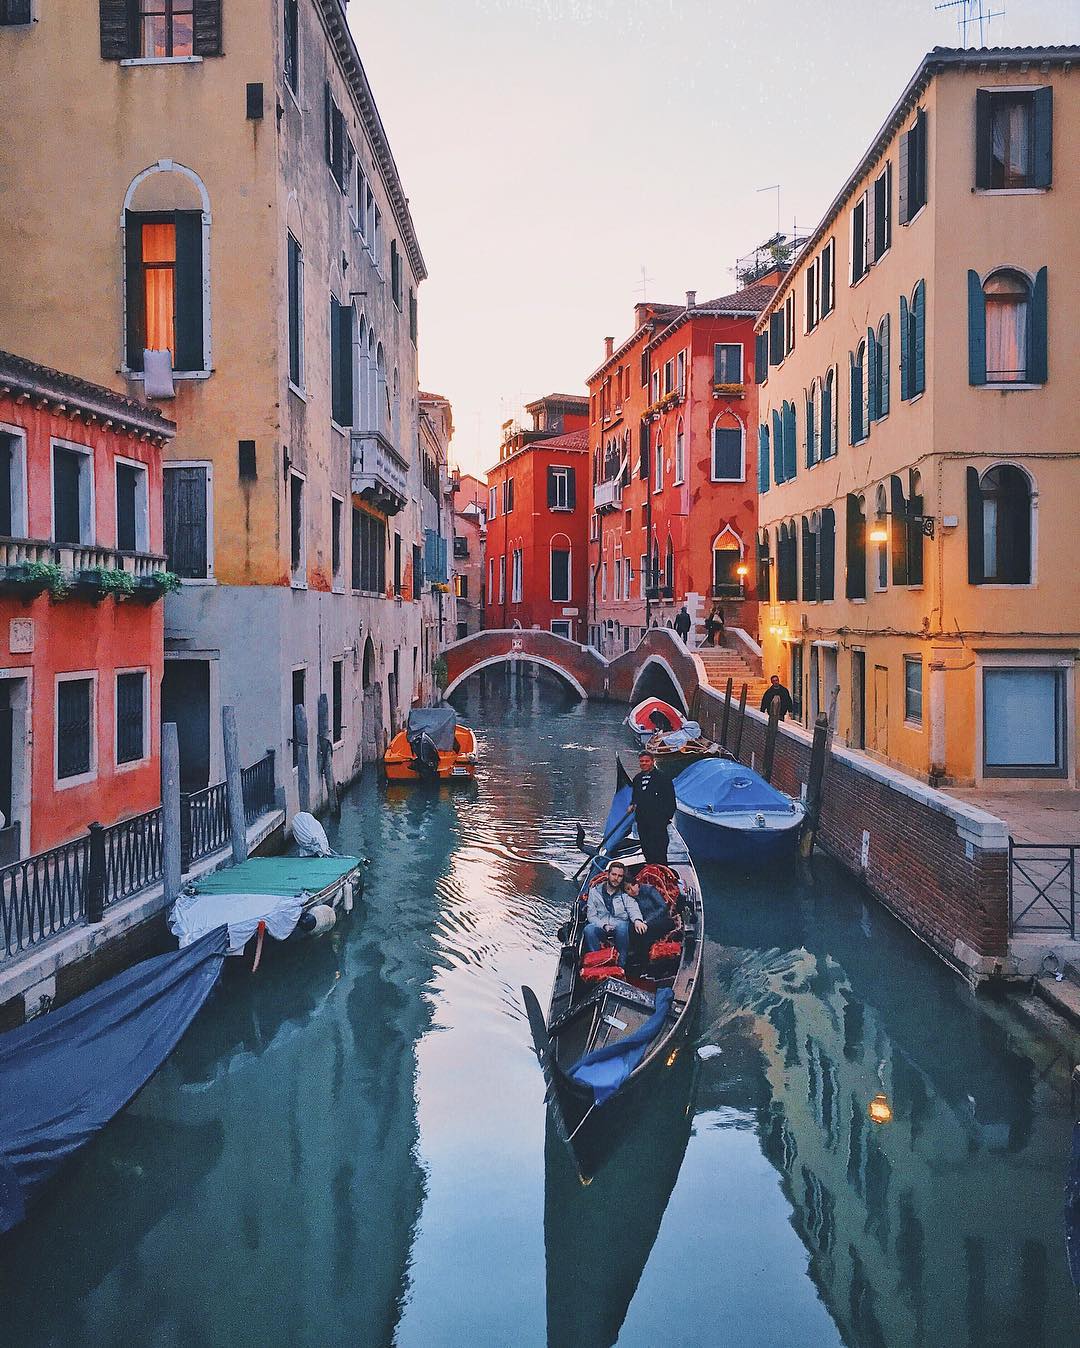 特別的義大利威尼斯賽船節，快來感受威尼斯的傳統文化